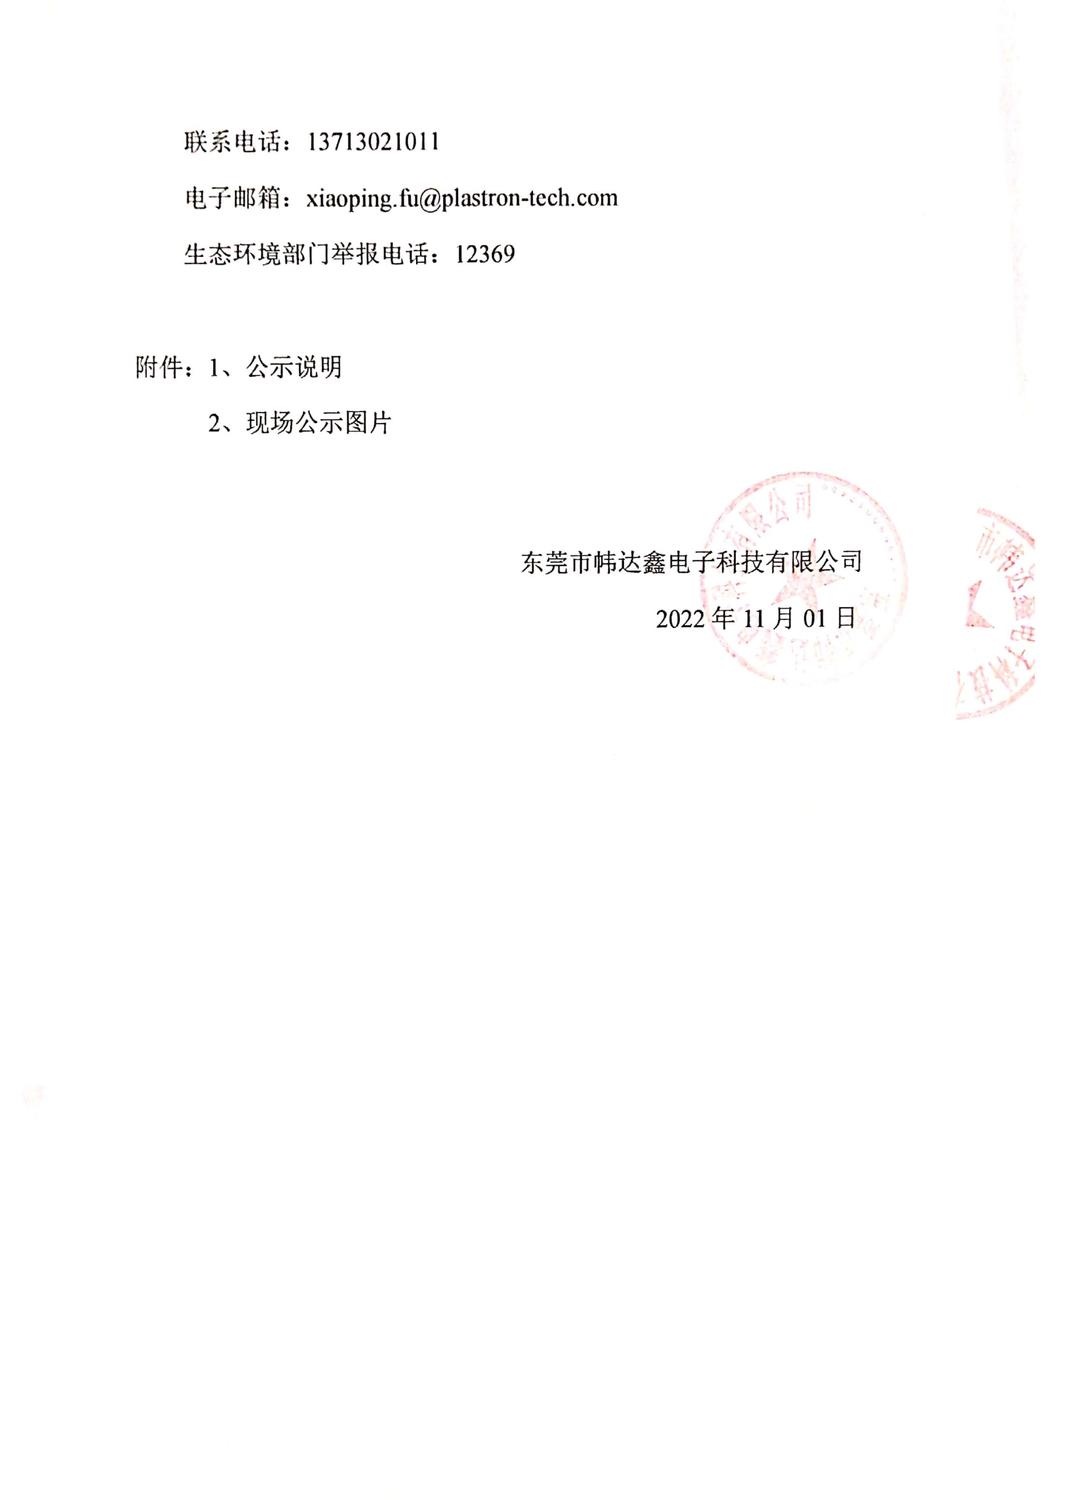 关于东莞市帏达鑫电子科技有限公司建设项目环境保护设施调试报告的公示_页面_2.jpg